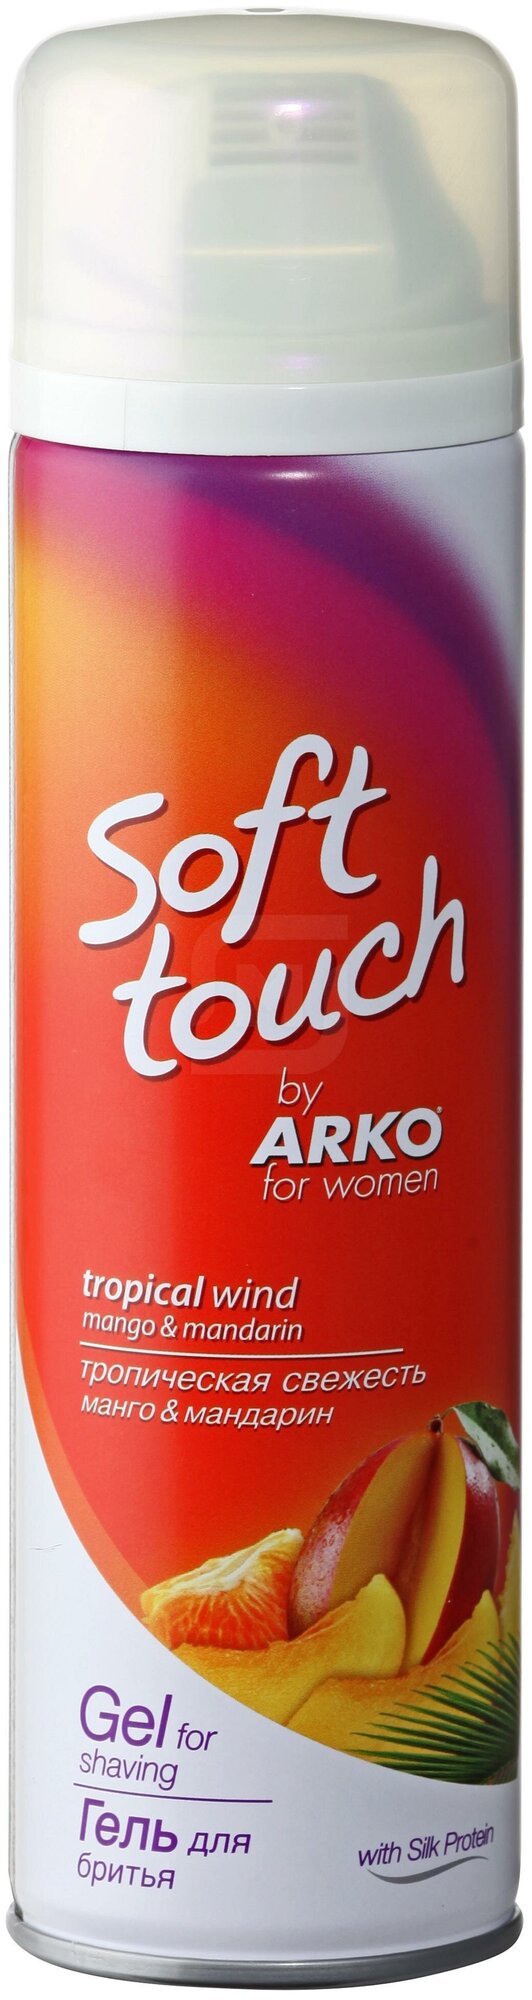 Гель для бритья Arko Тропическая свежесть Soft Touch